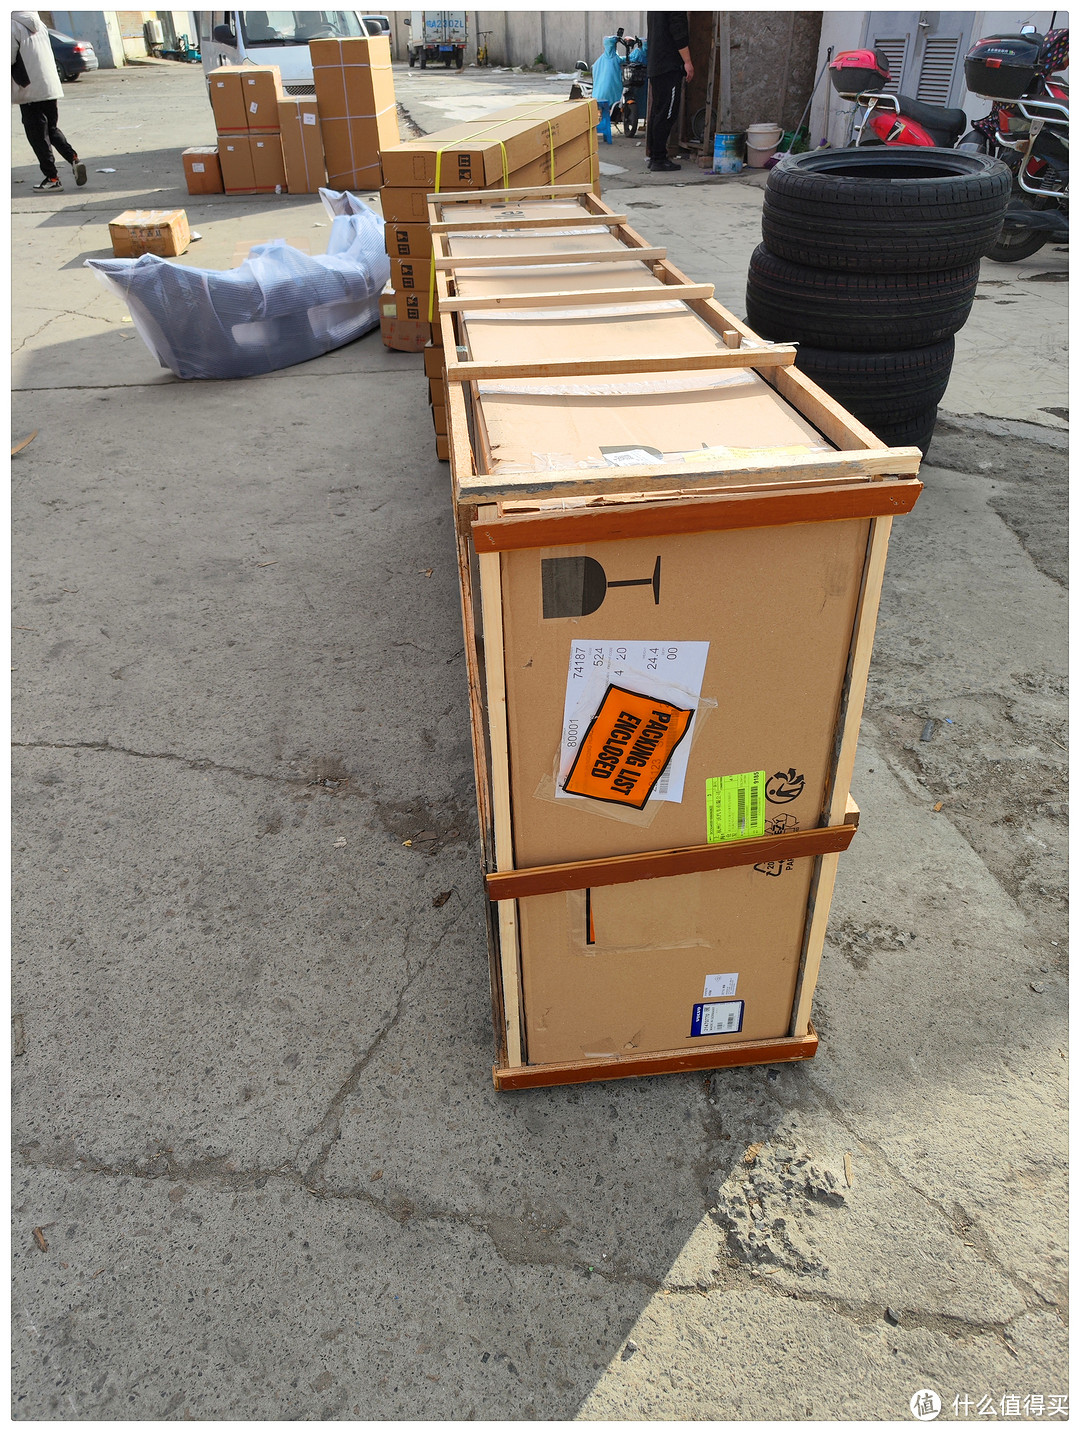 沃尔沃 XC60 加装 原厂 行李架 & 原厂 车顶行李箱  和其他配件